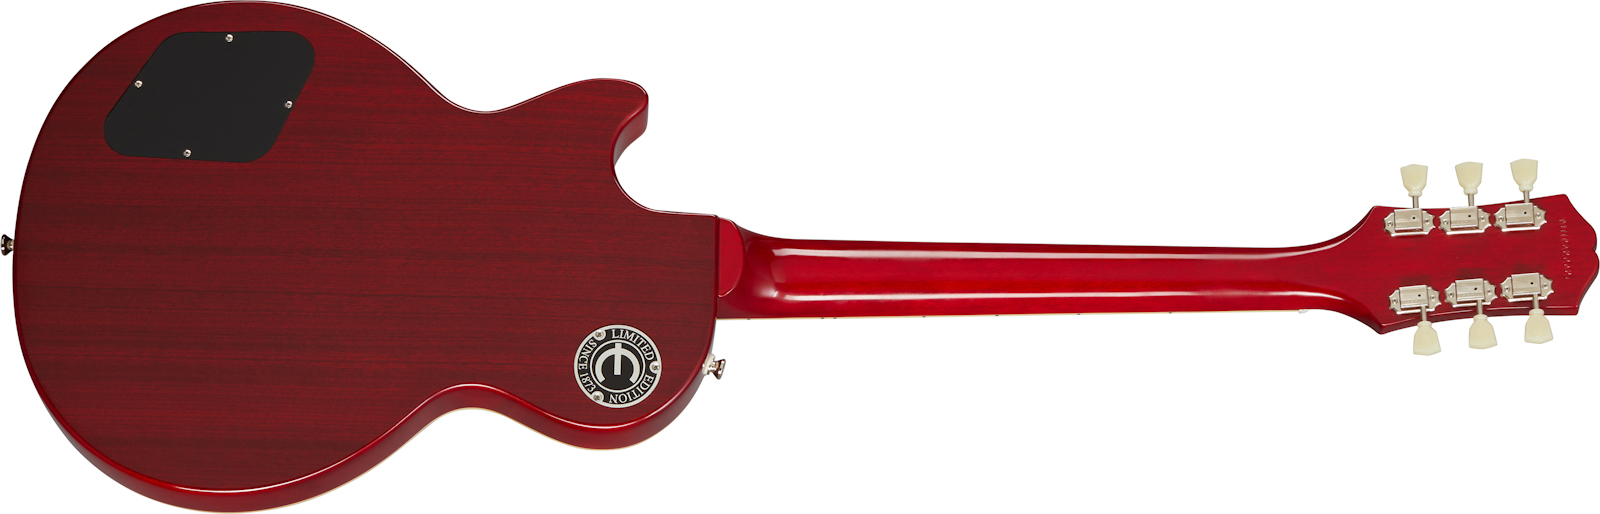 Epiphone Les Paul Standard 1959 Outfit 2h Ht Rw - Aged Dark Cherry Burst - Guitarra eléctrica de corte único. - Variation 1